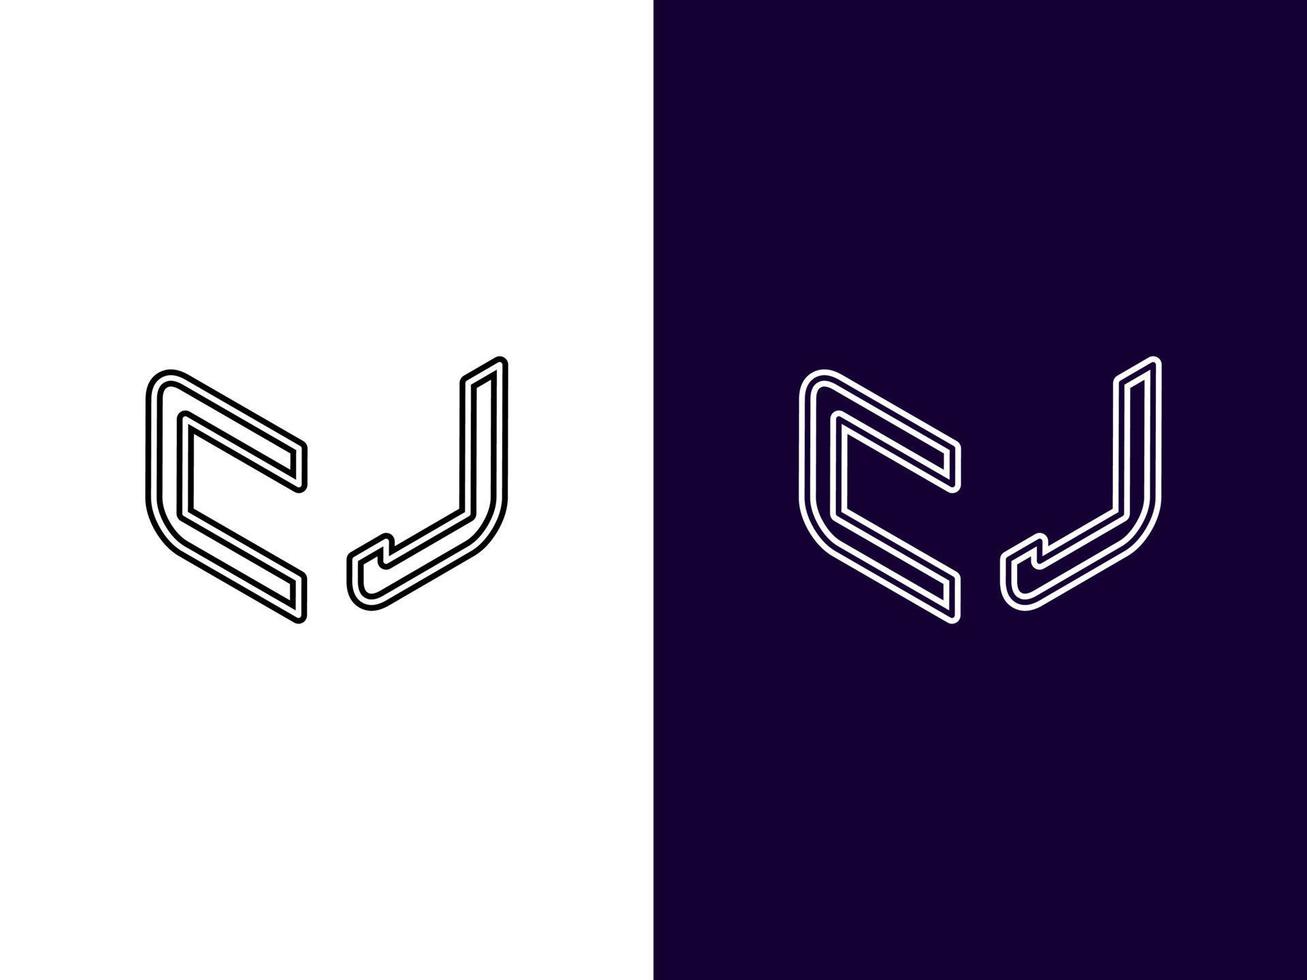 letra inicial cj diseño de logotipo 3d minimalista y moderno vector